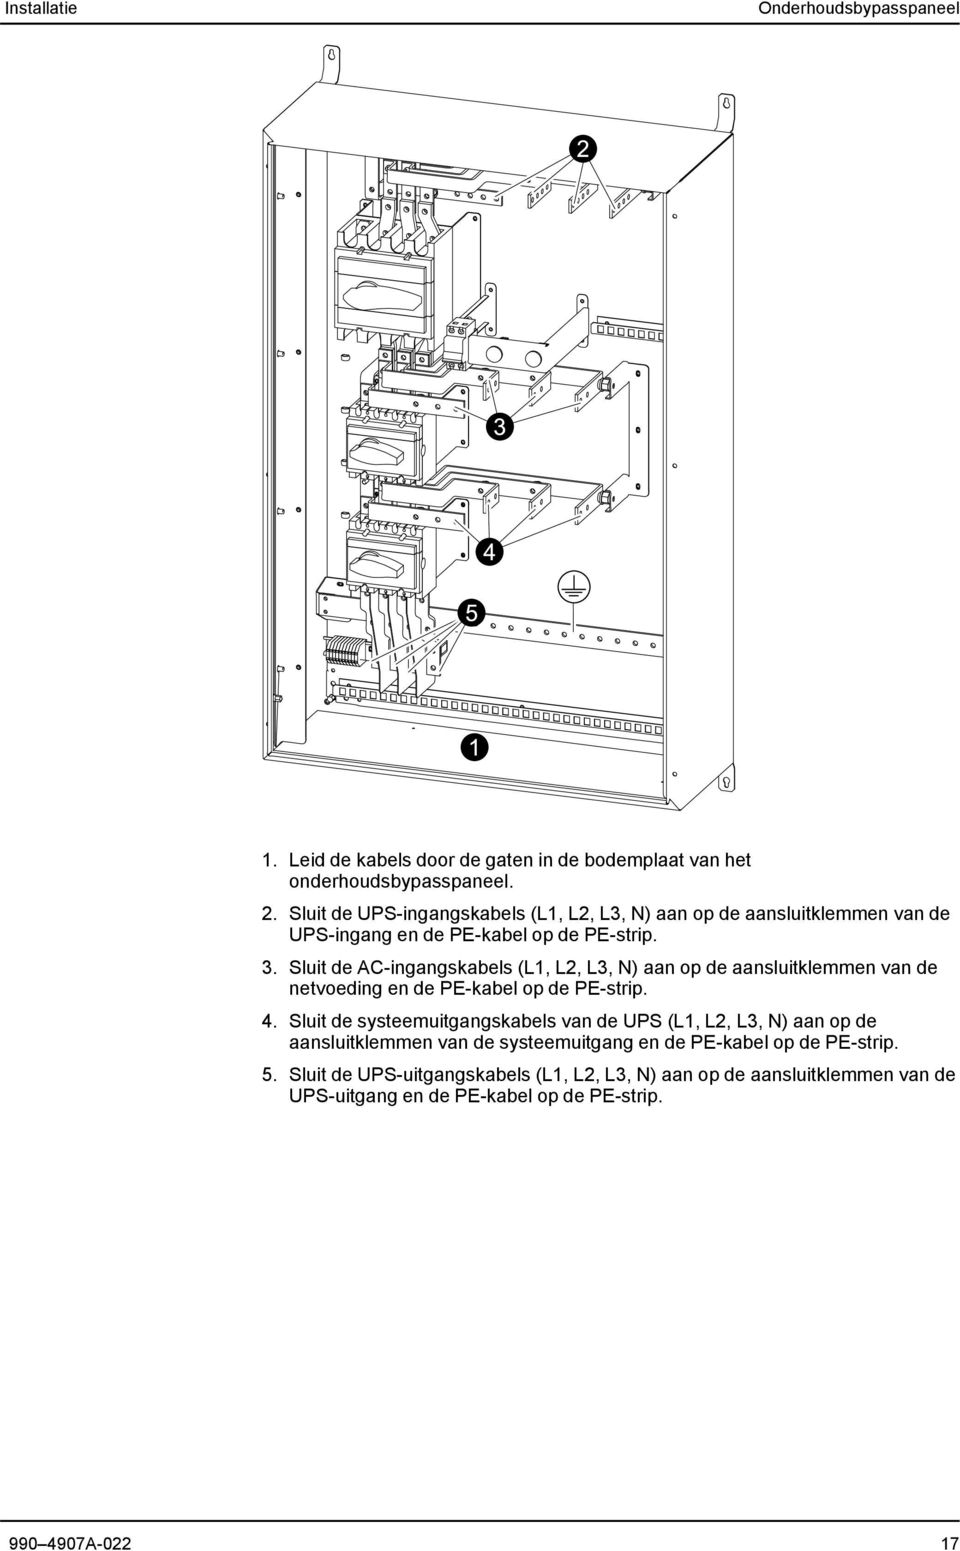 Sluit de AC-ingangskabels (L1, L2, L3, N) aan op de aansluitklemmen van de netvoeding en de PE-kabel op de PE-strip. 4.